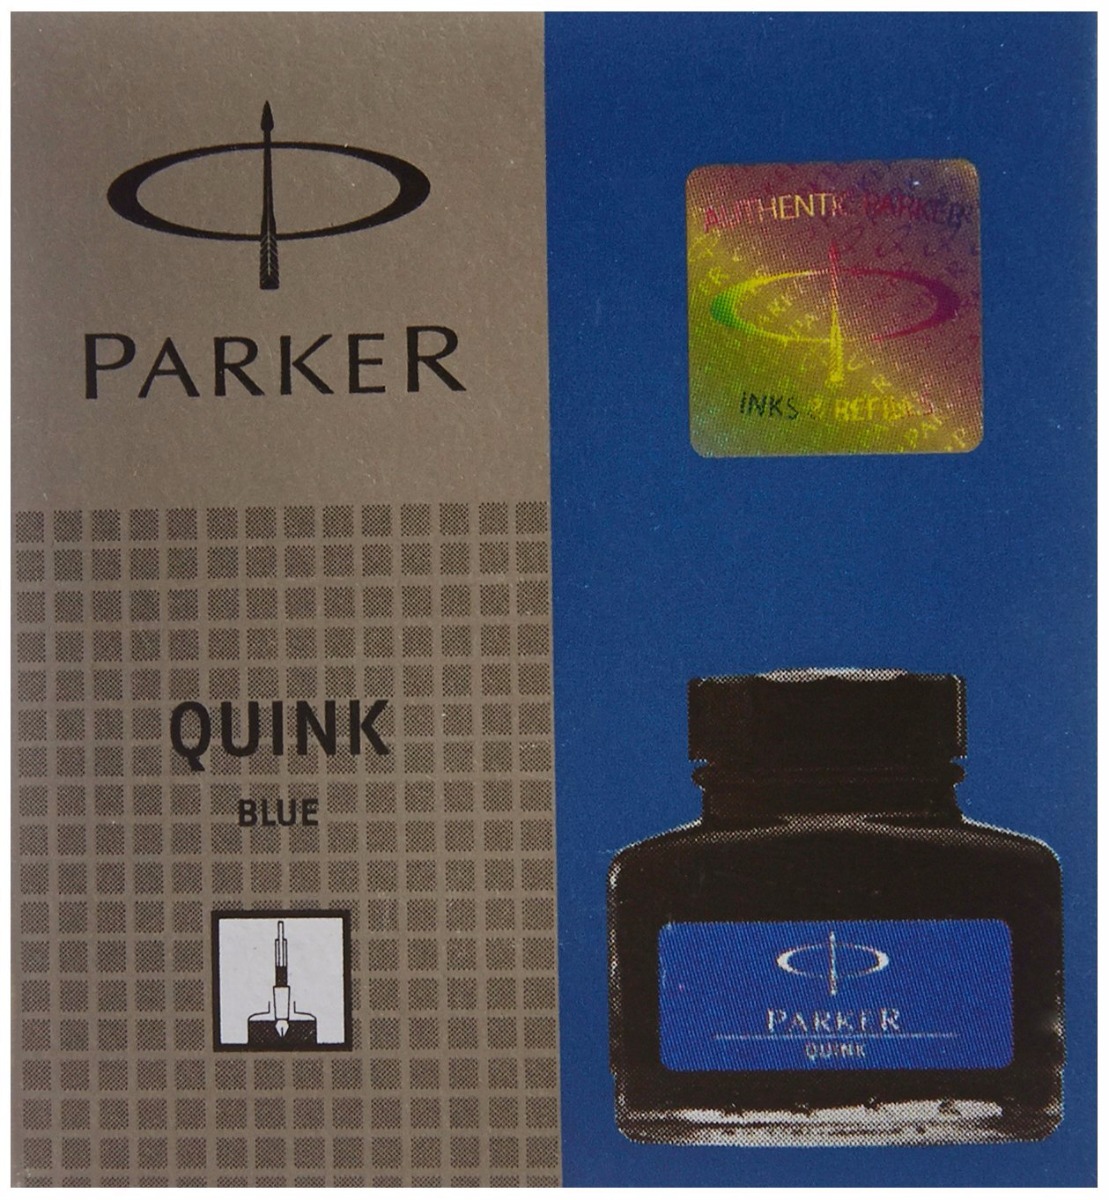 Parker Model: 70035 Parker quink Blue 30 ml ink bottle